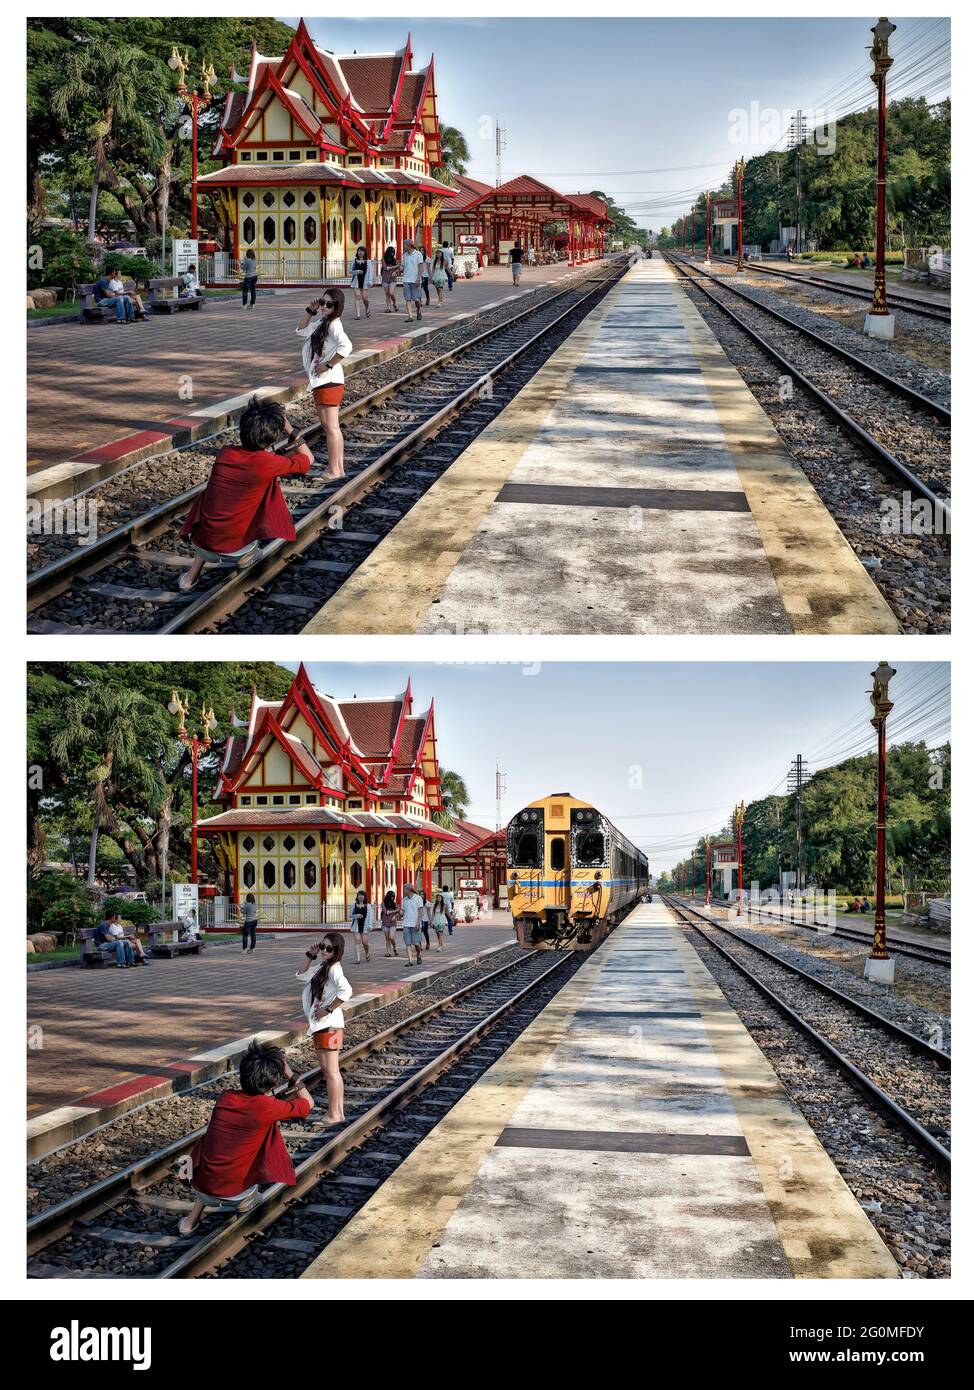 Prima e dopo Photoshop manipolazione digitale di coppia alla stazione ferroviaria tracce con e senza treno in arrivo. Hua Hin Thailandia Sud-est asiatico Foto Stock